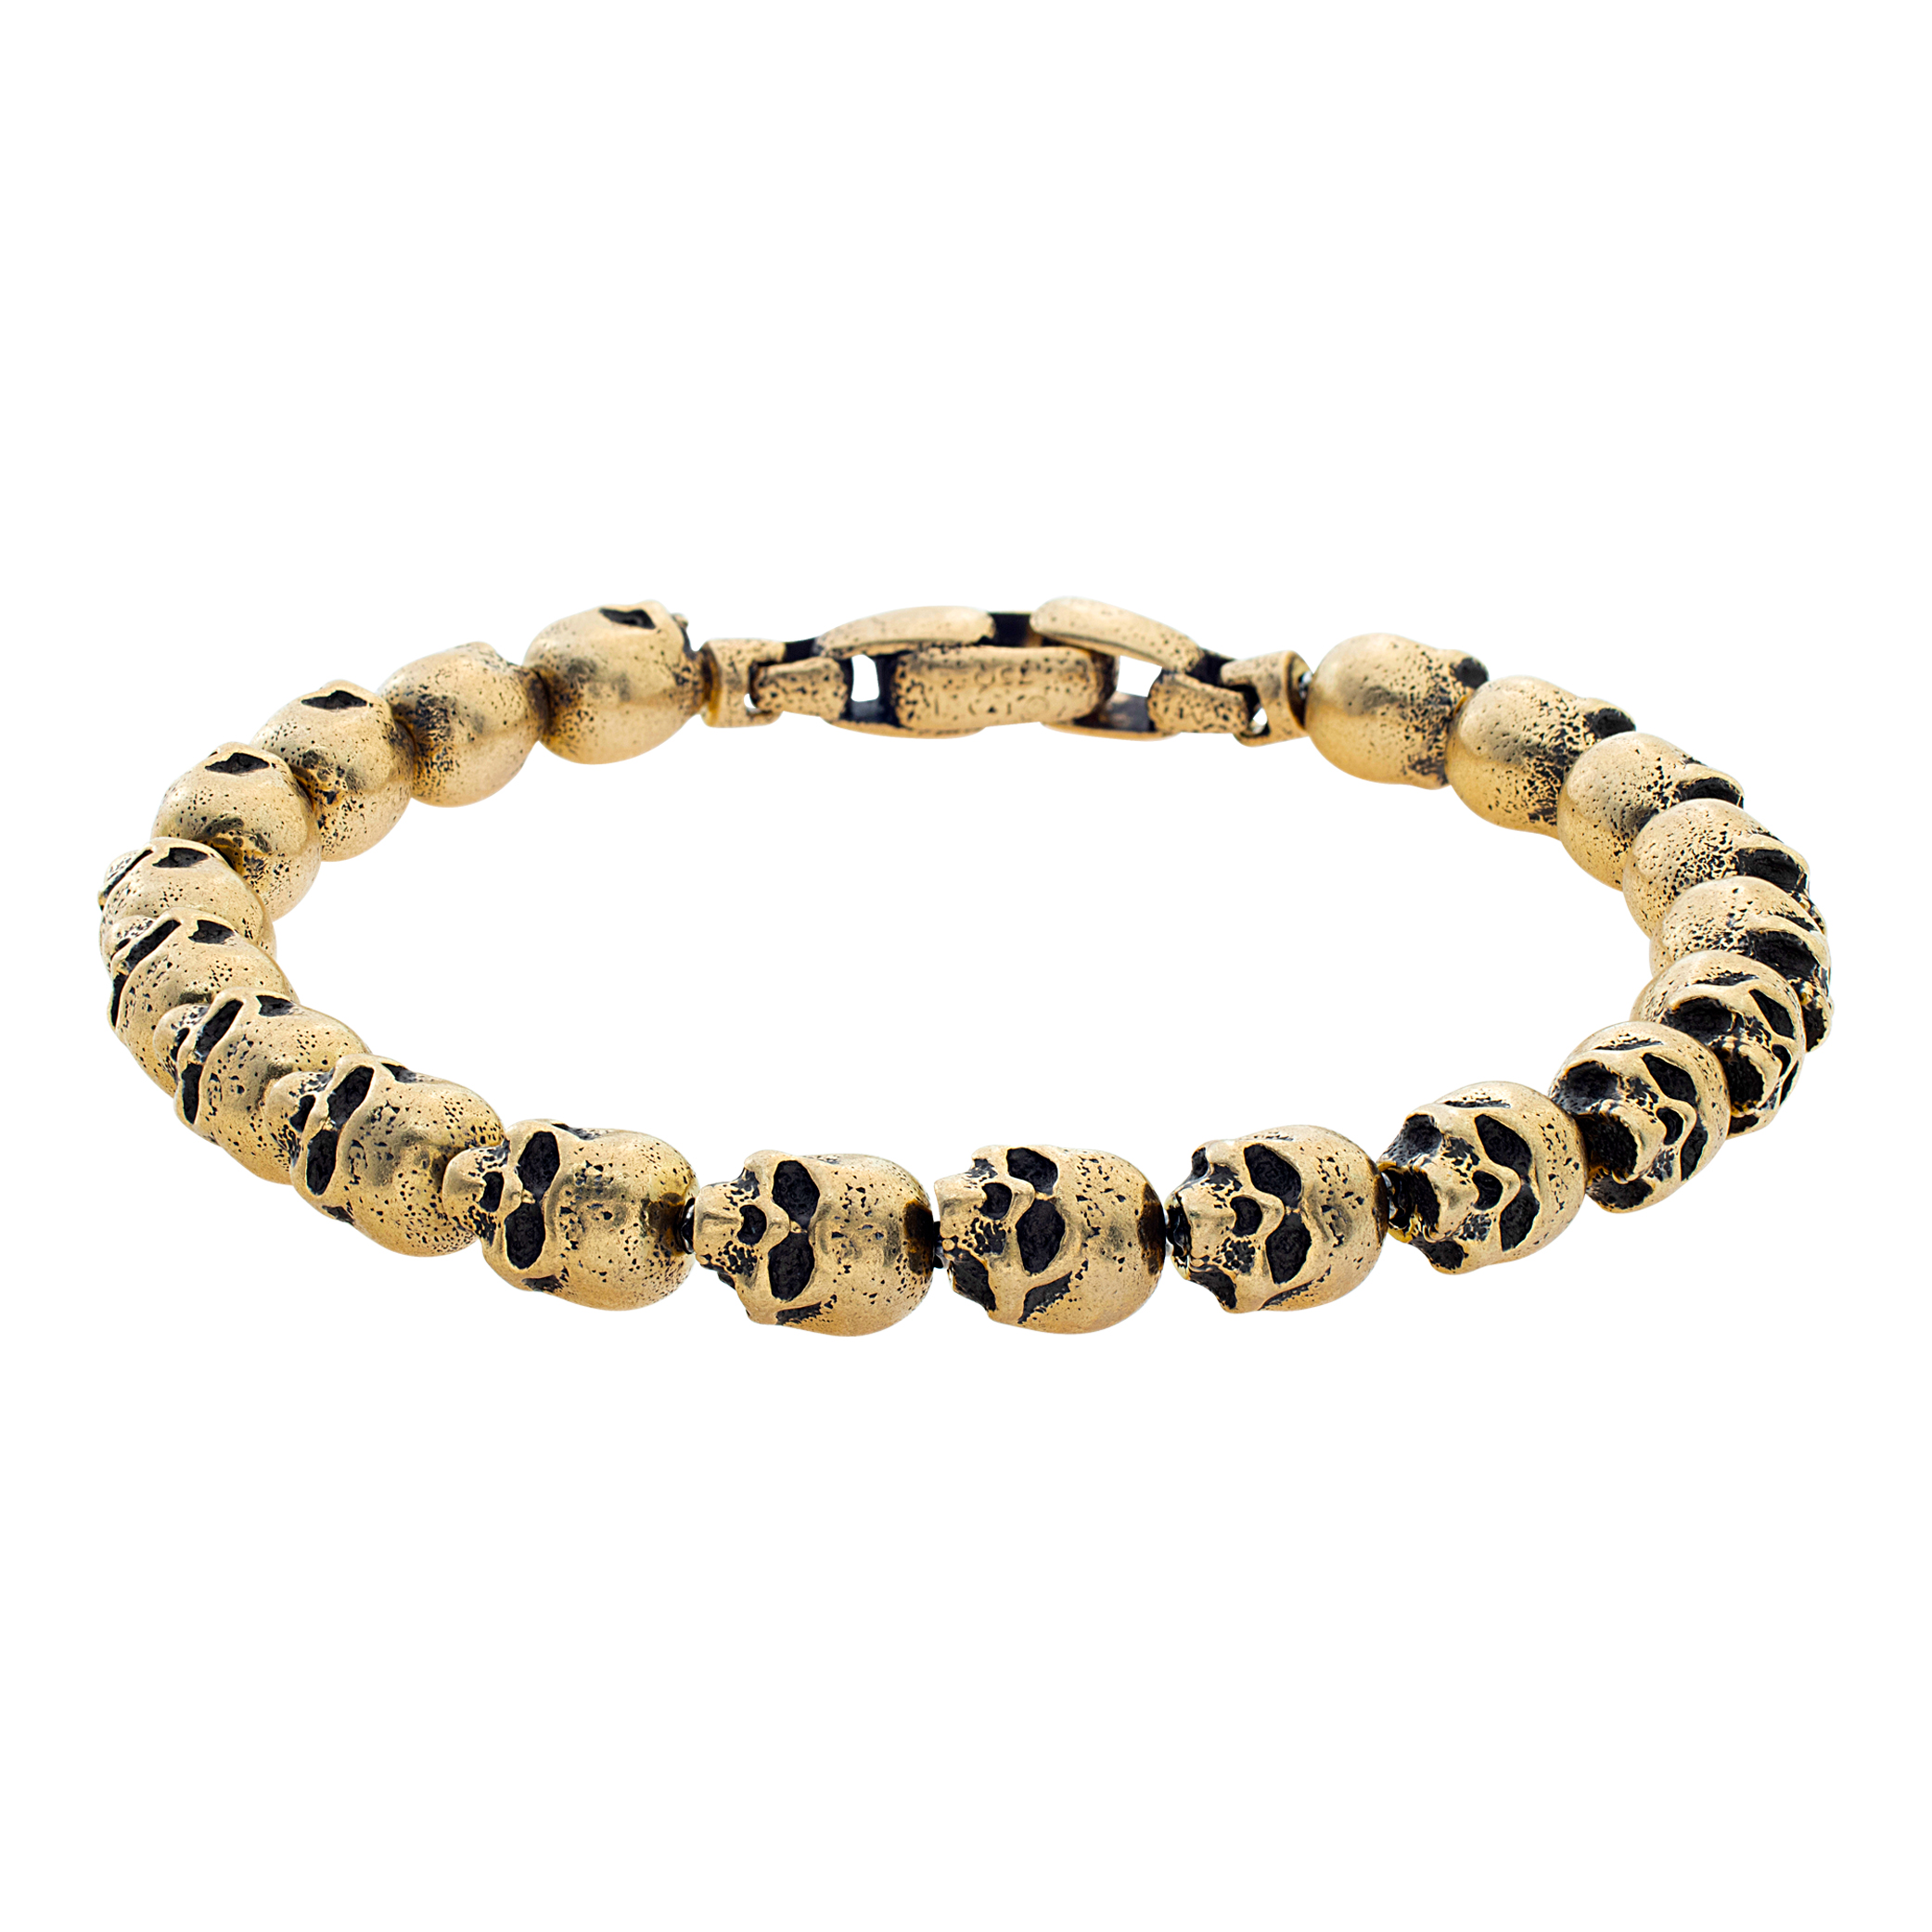 David Yurman Skull Bead bracelet in 18k yellow gold